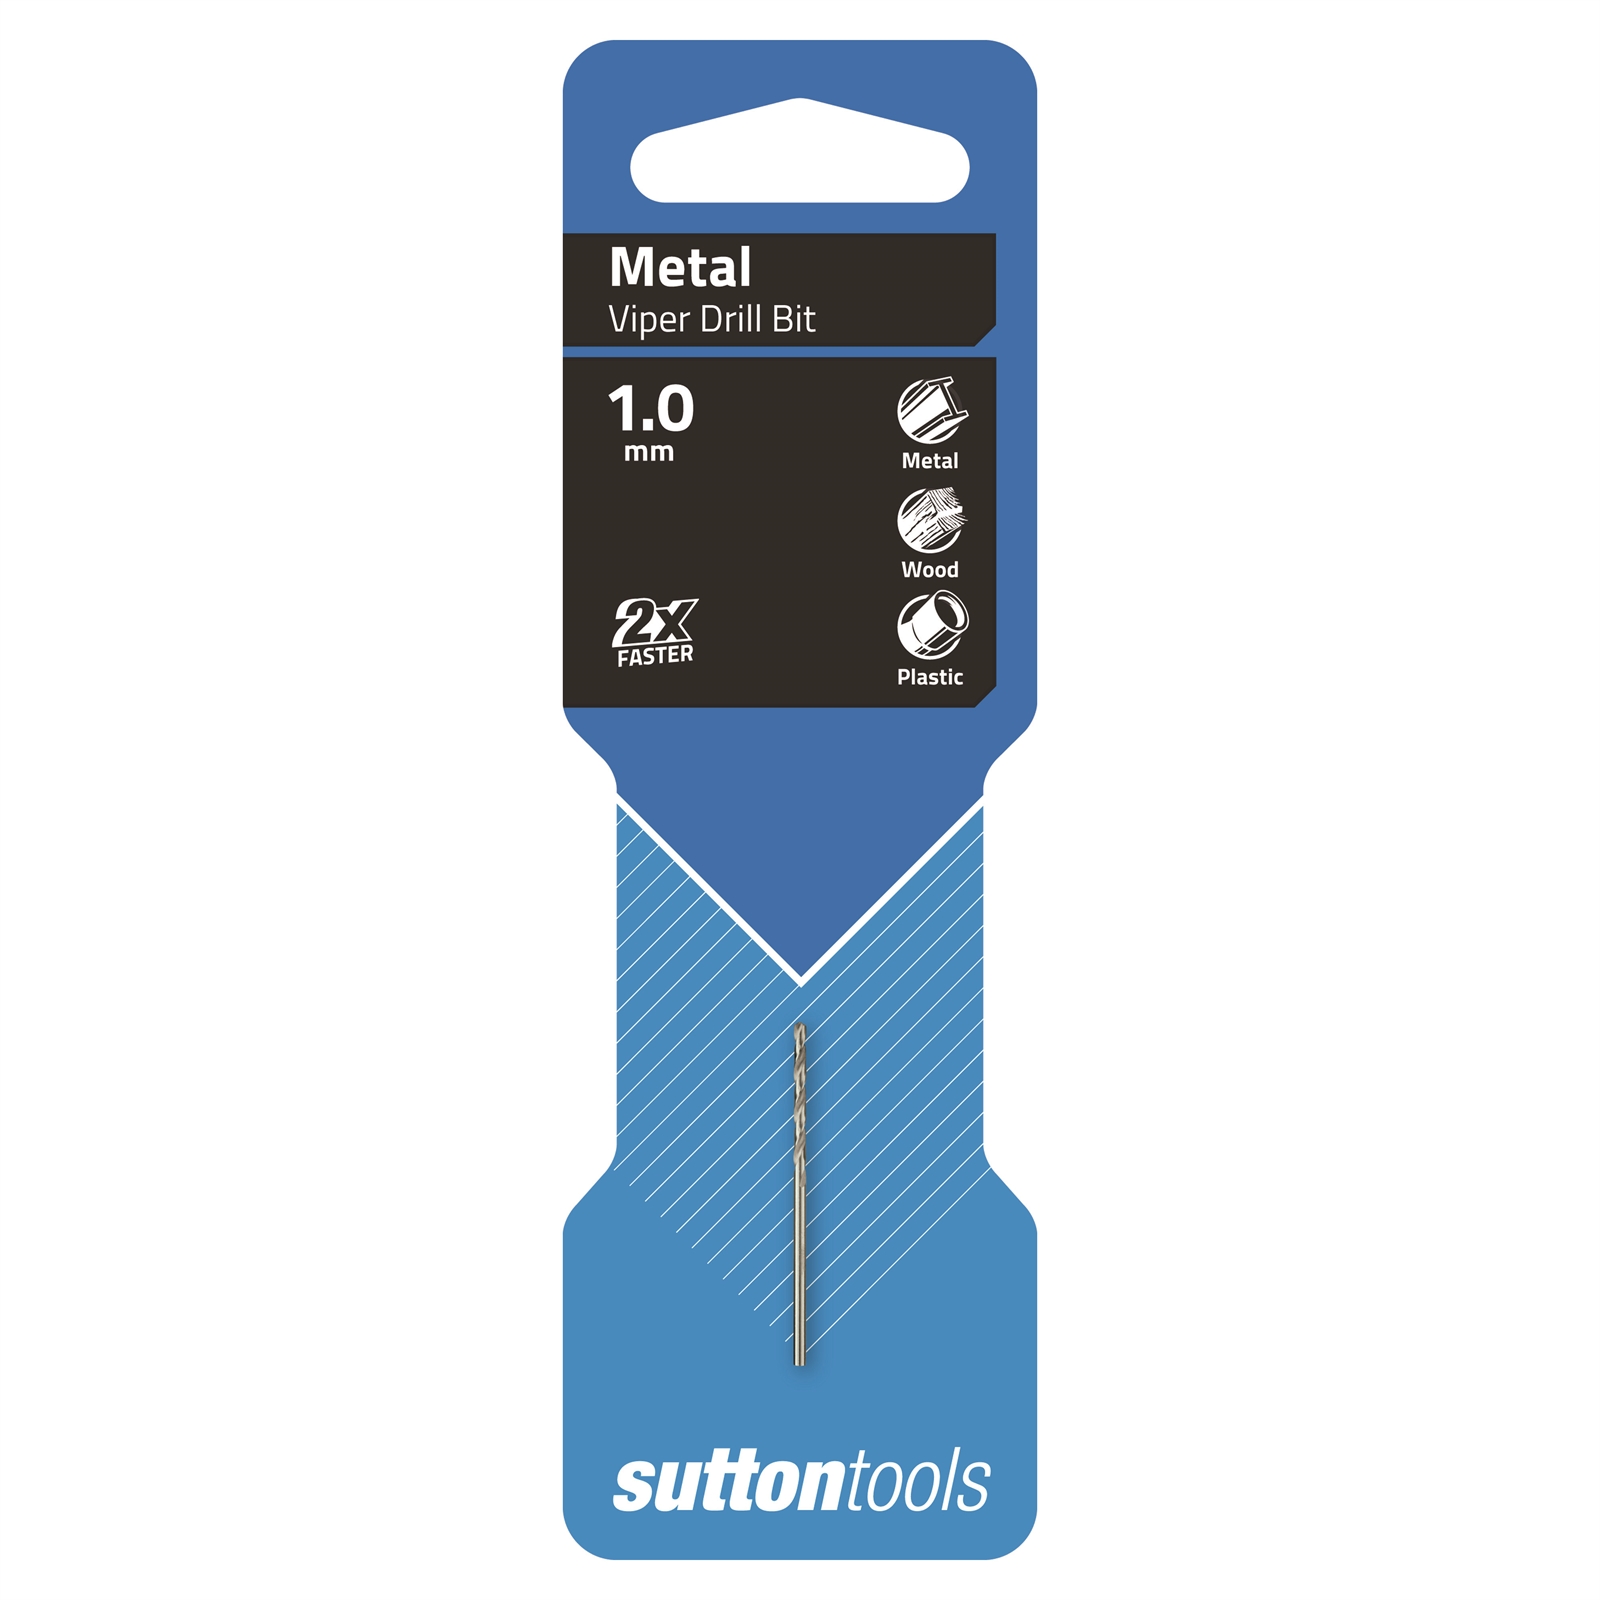 Sutton Tools 1mm HSS Metric Viper Drill Bit